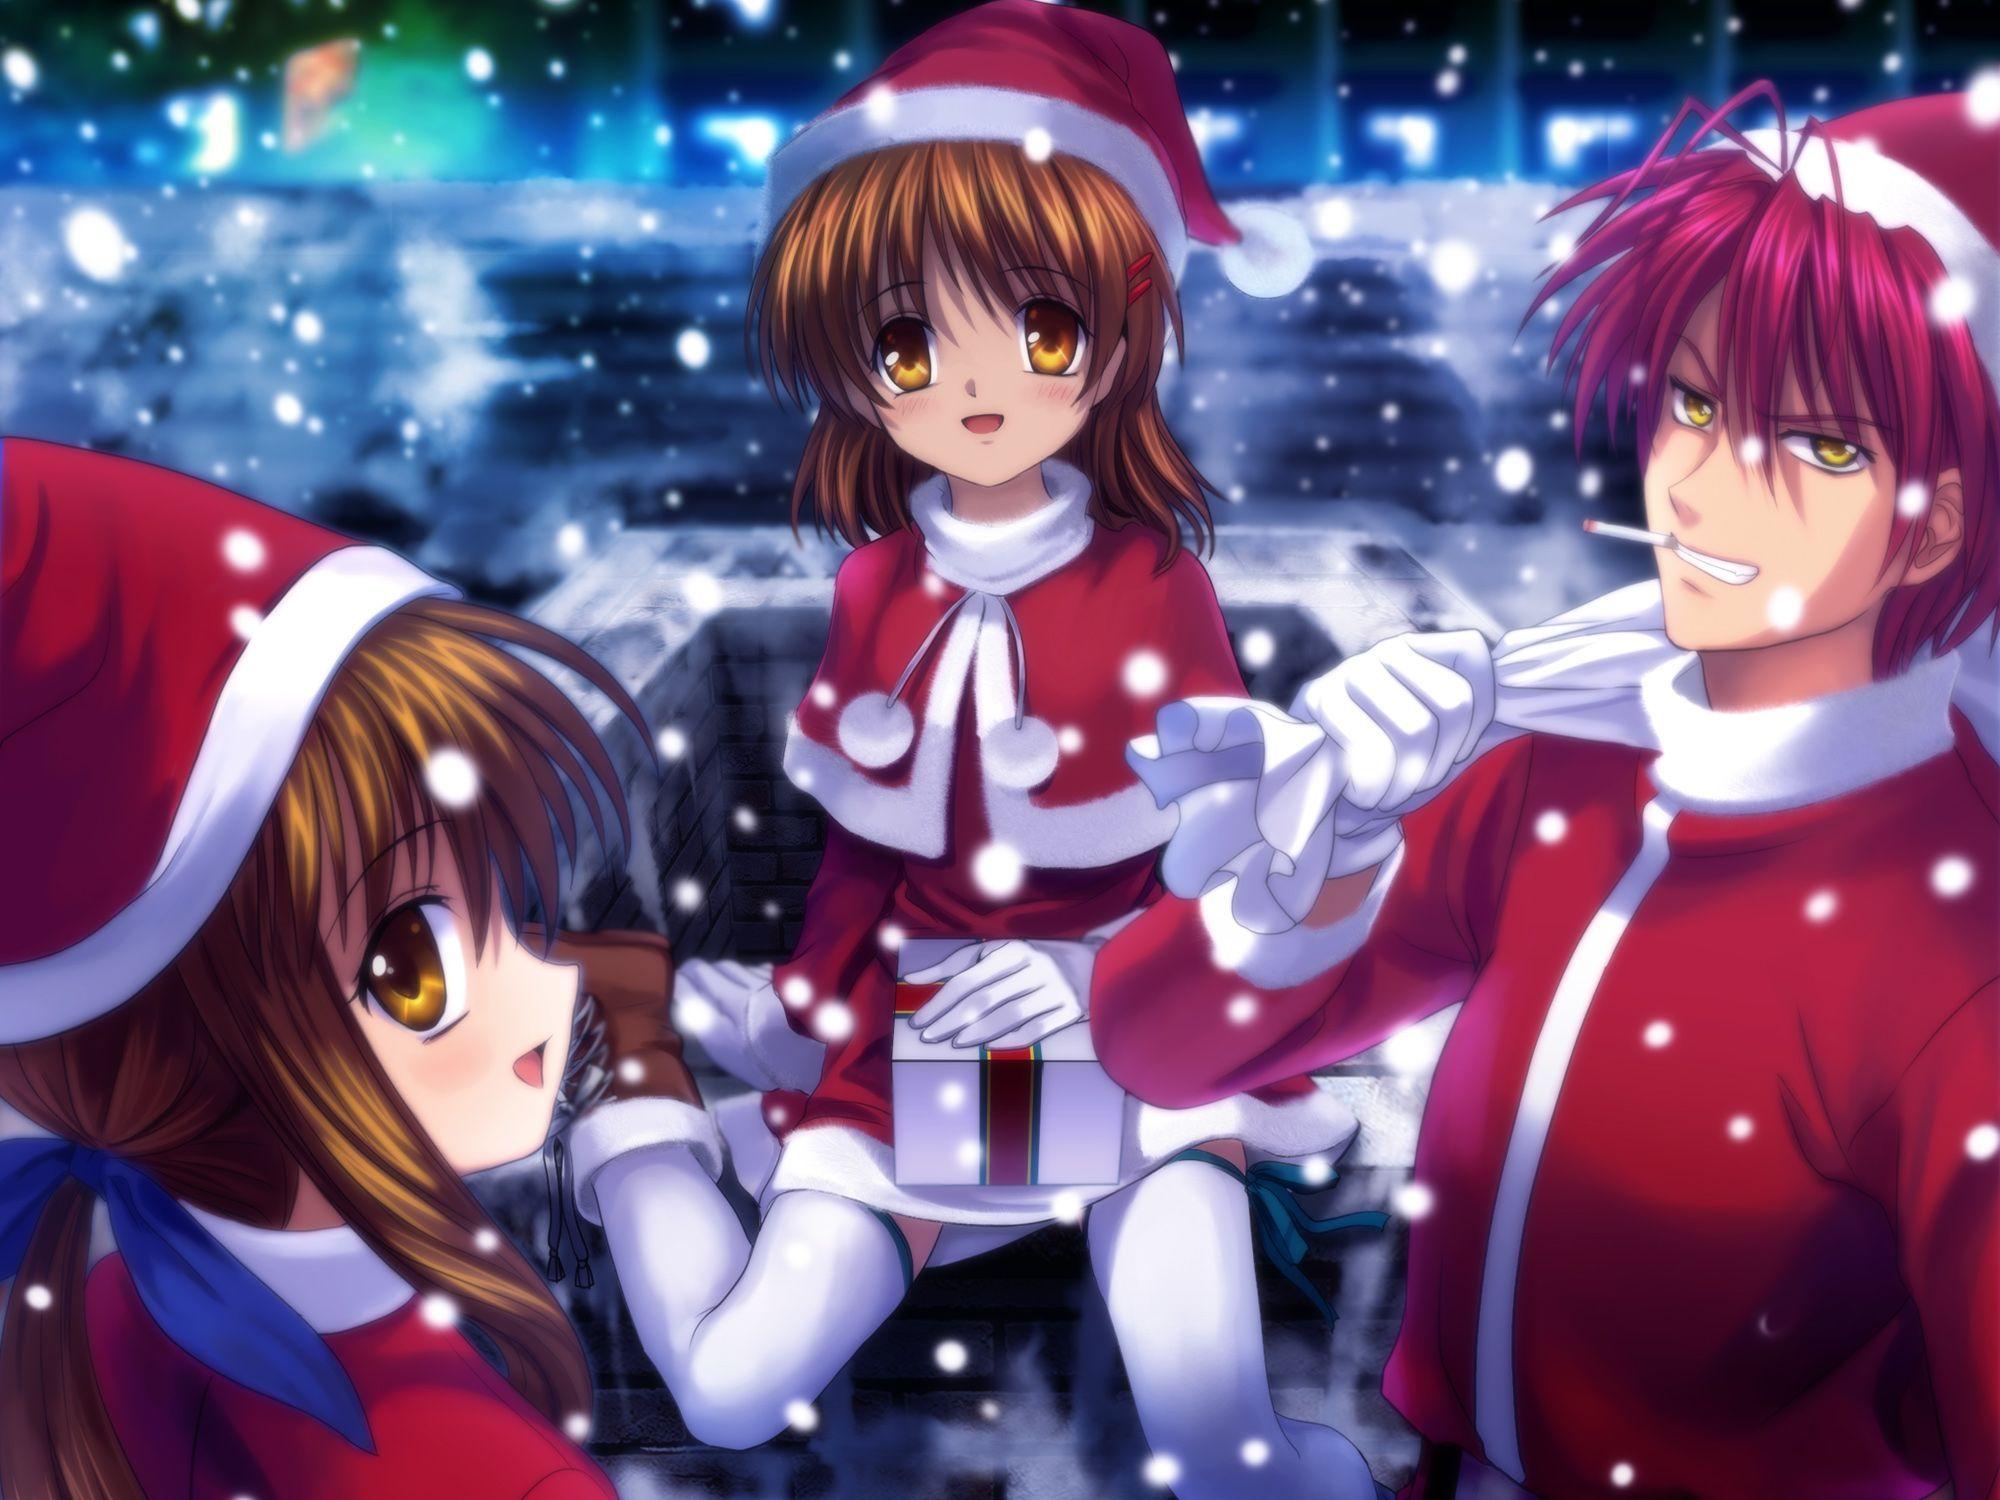 Anime Christmas Wallpaper Desktop. Anime Christmas